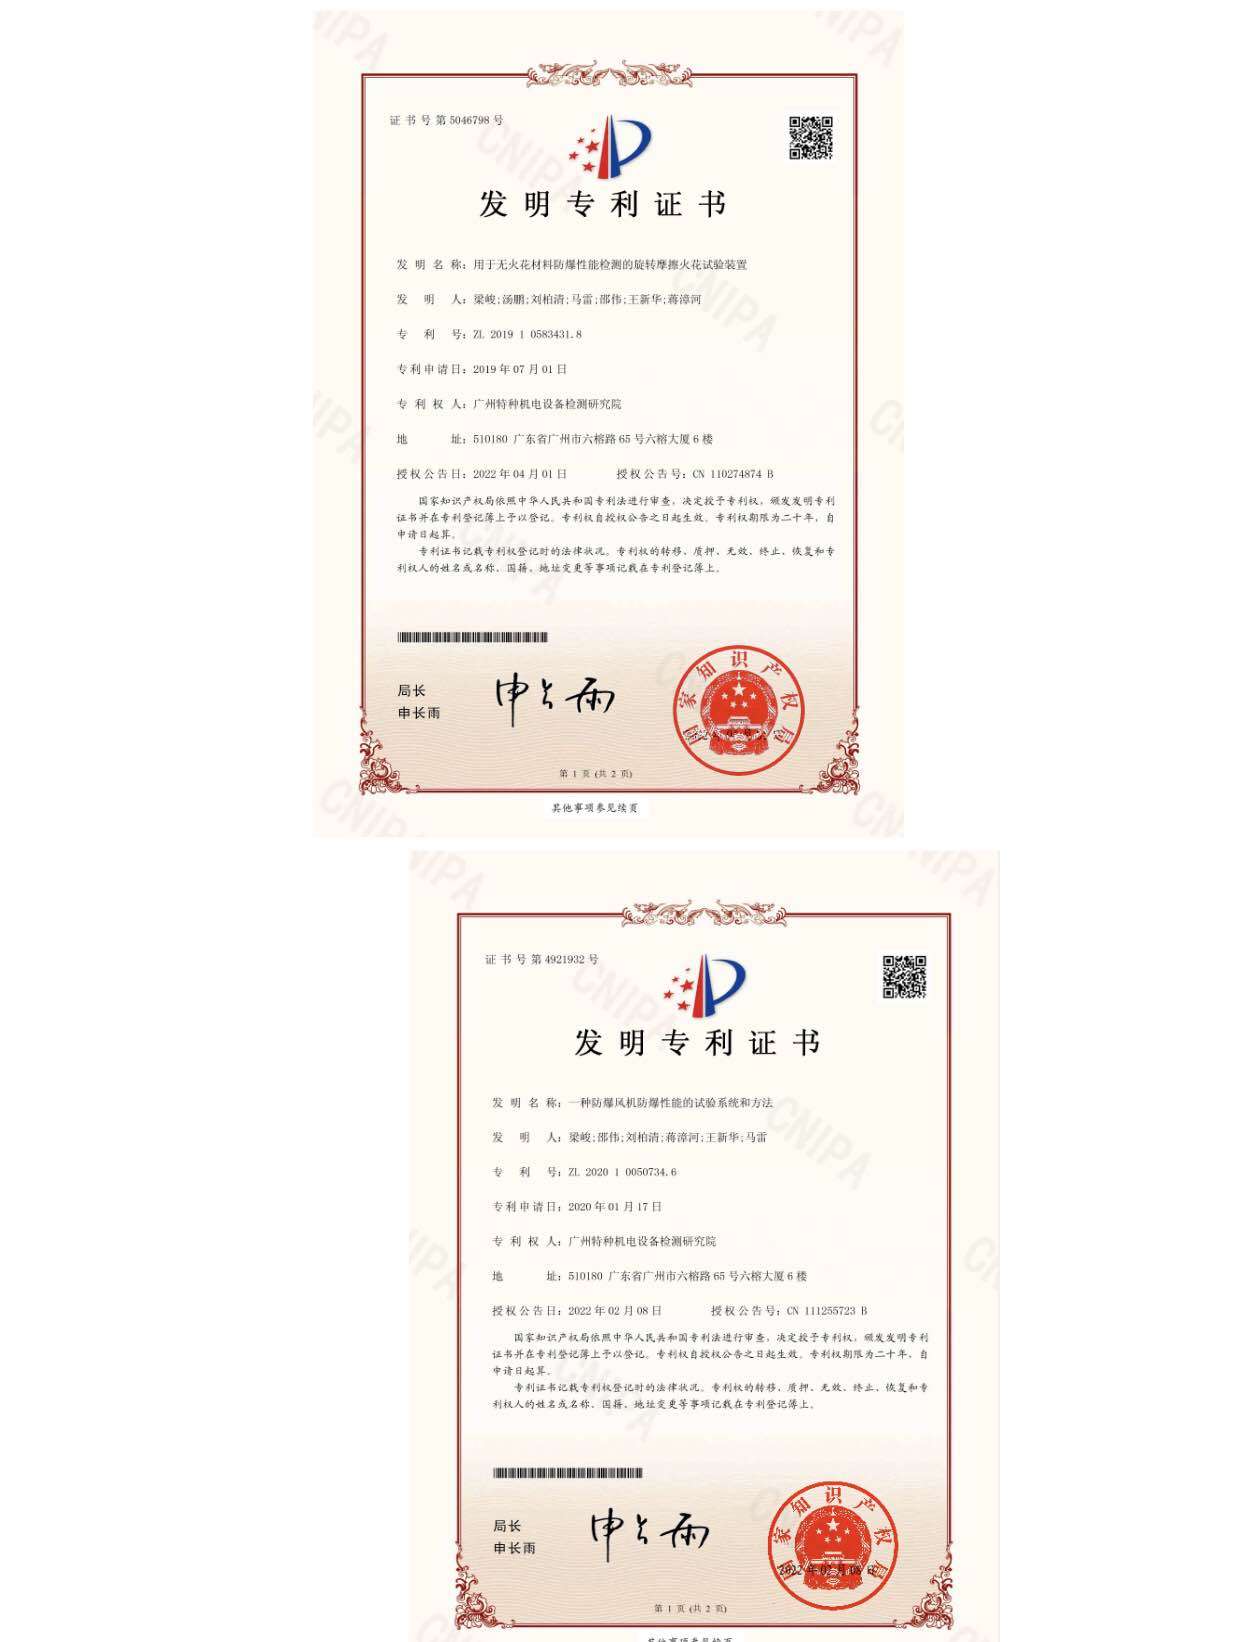 广州机电院两项发明专利和两项实用新型专利获国家知识产权局授权